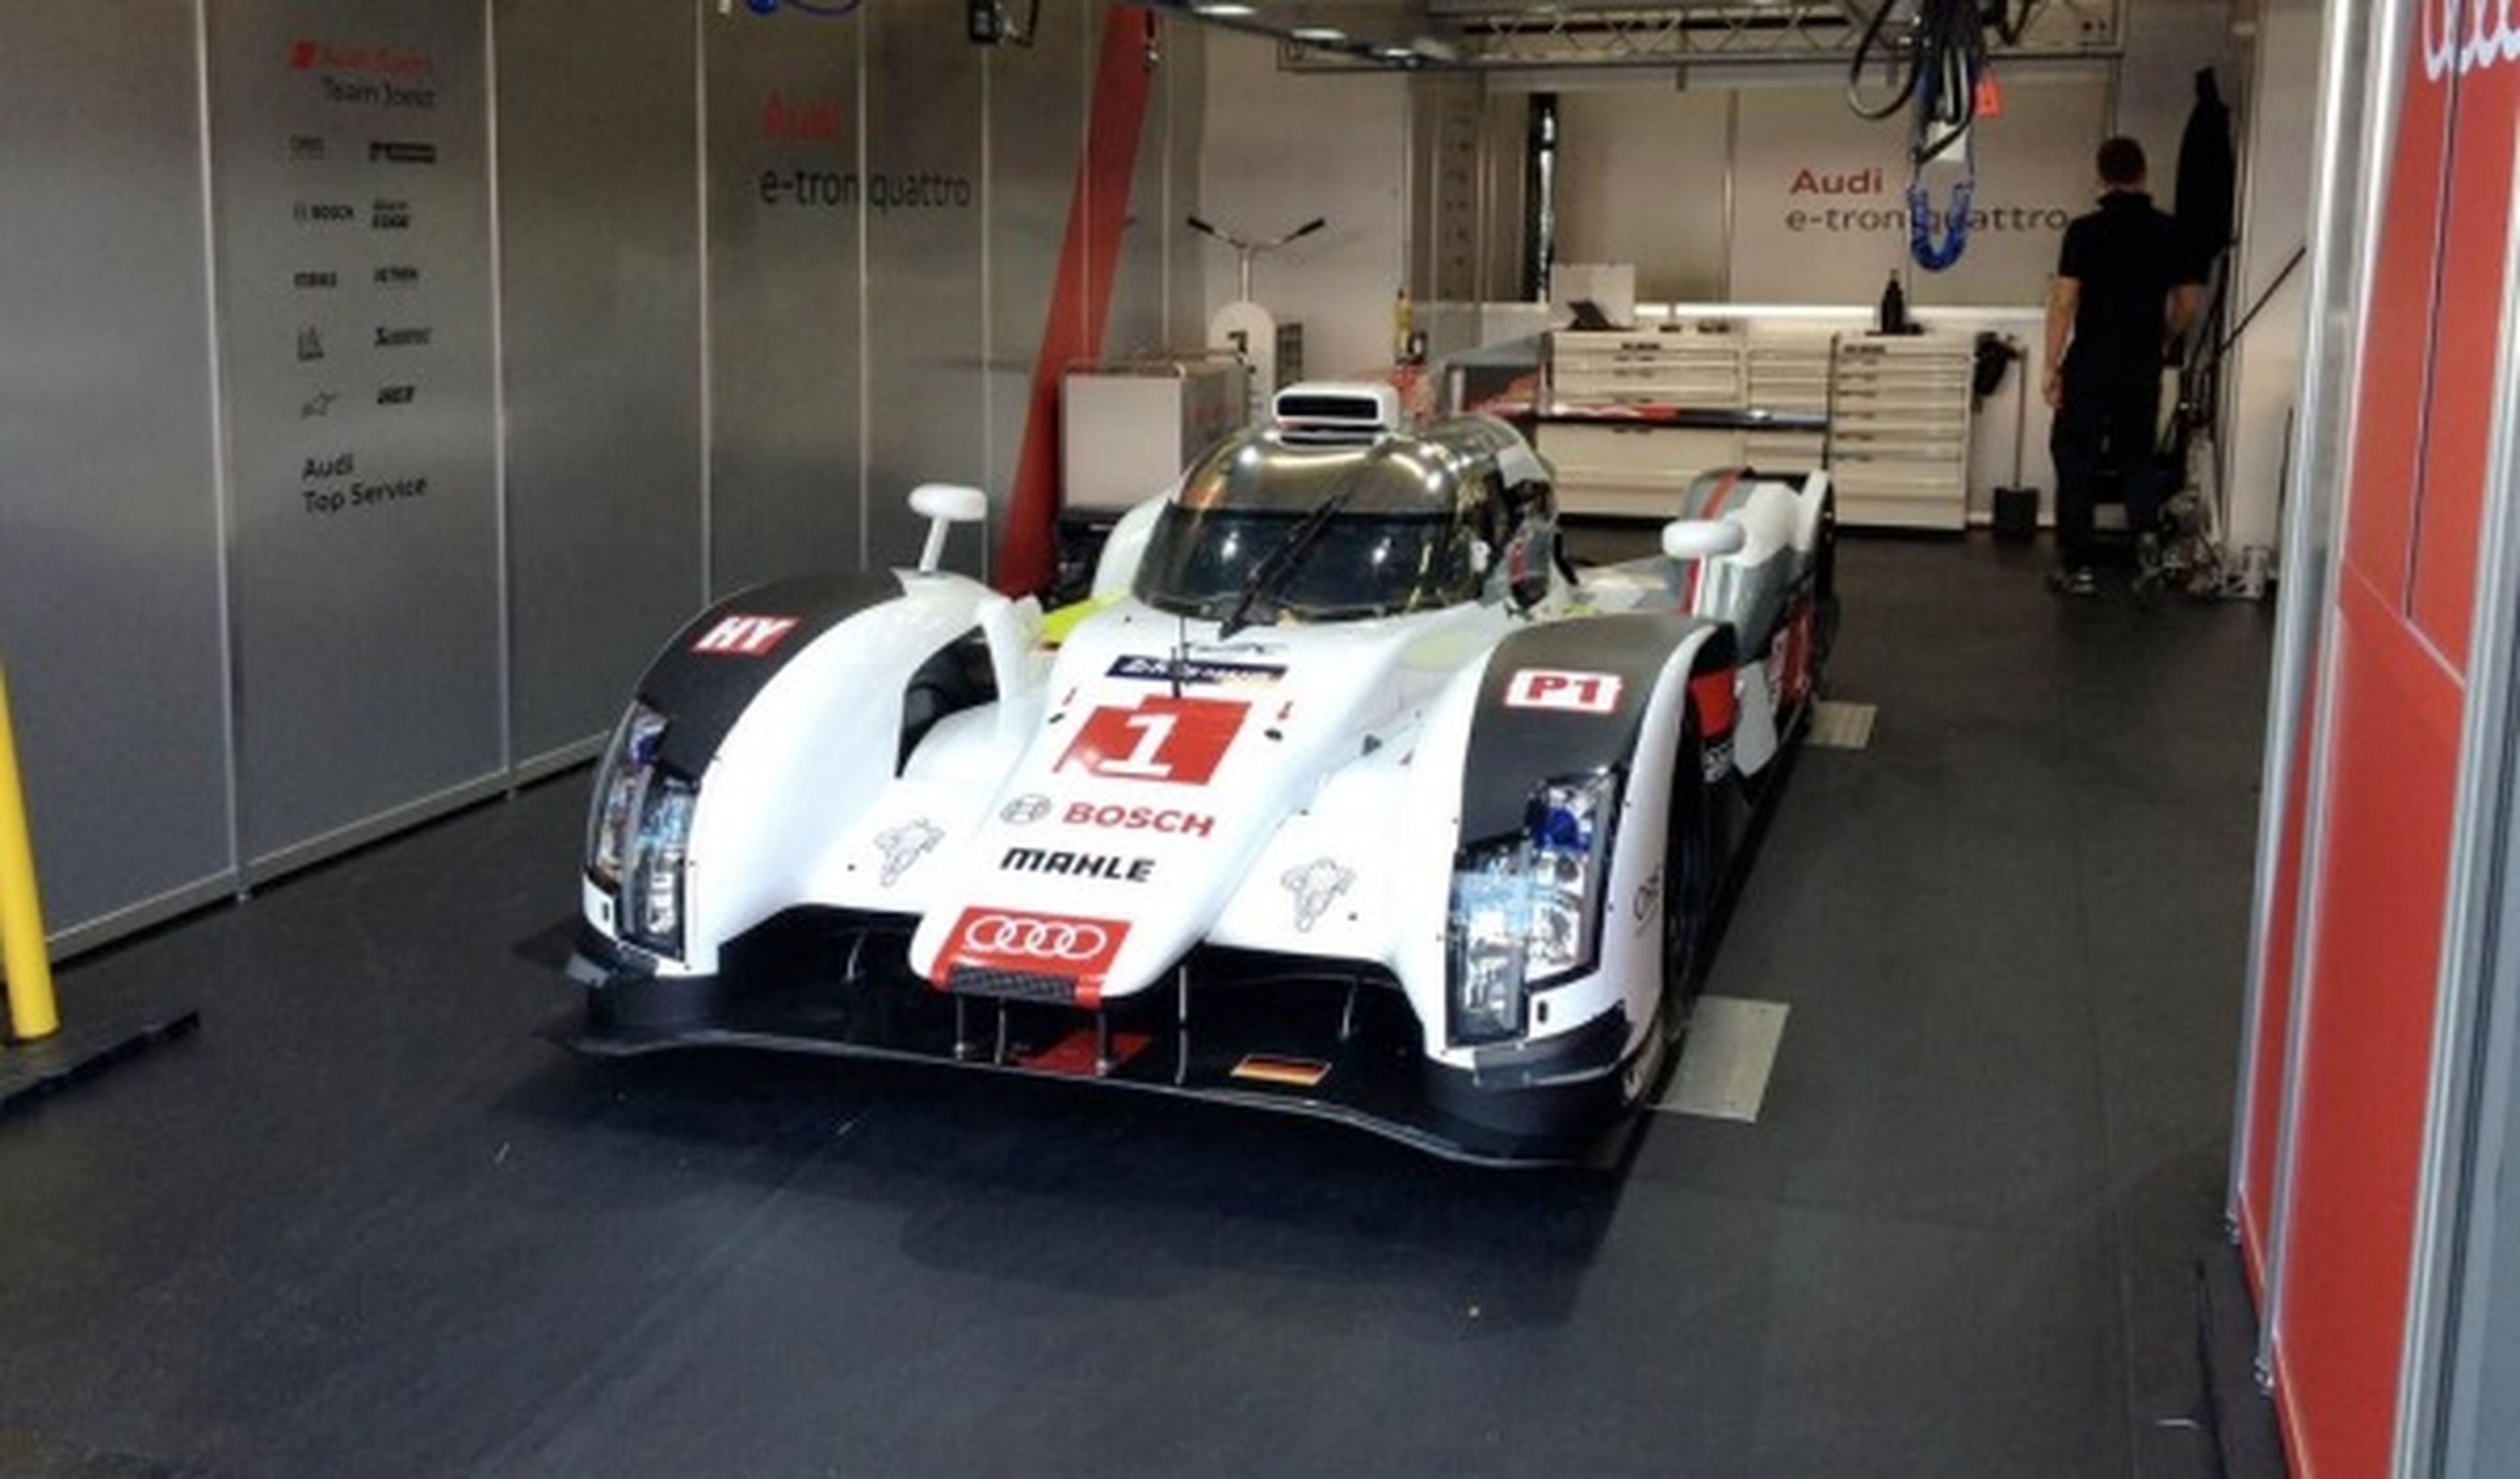 Audi Duval Le Mans 2014